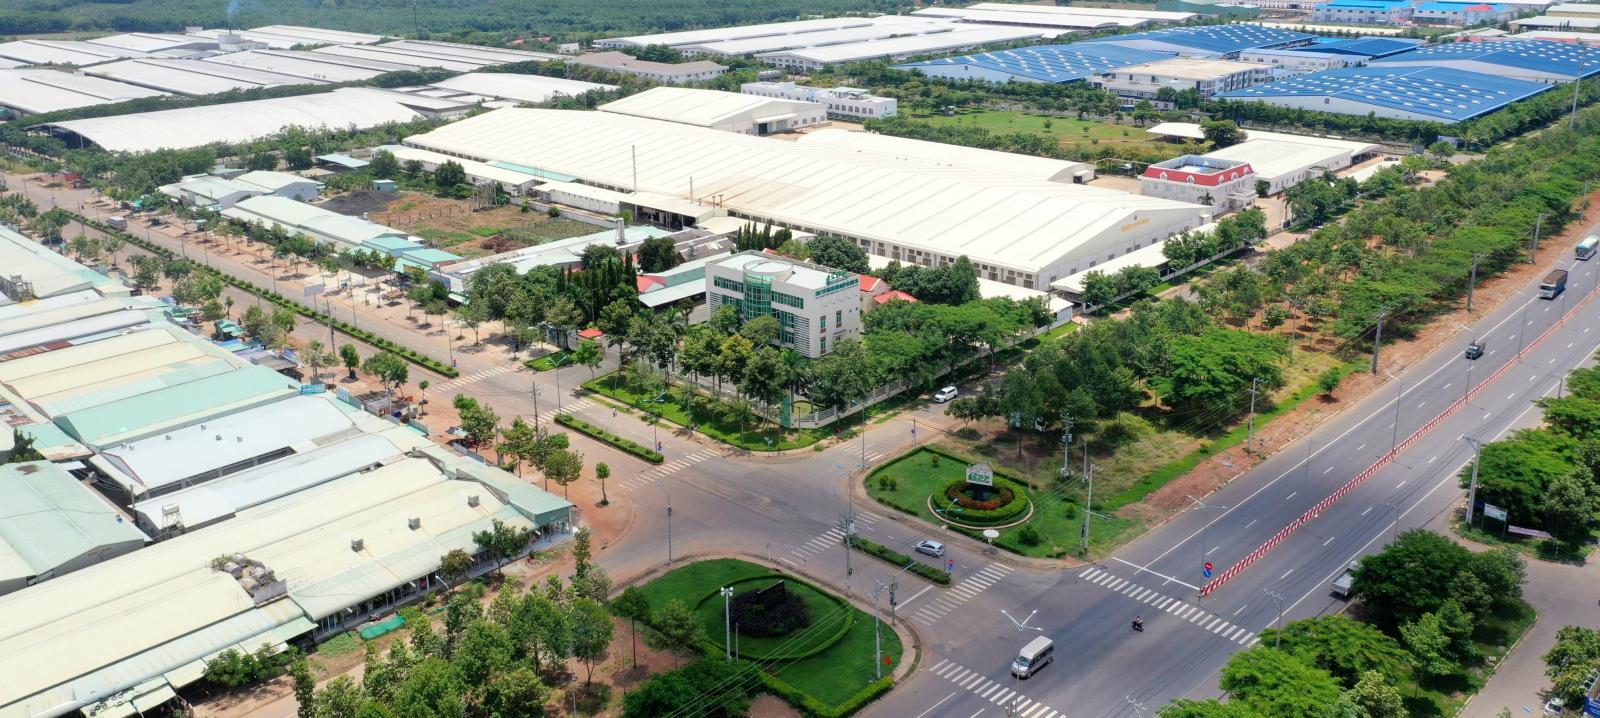 Một góc khu công nghiệp Đồng Xoài 1, nơi đang thu hút nhiều doanh nghiệp lớn trong và ngoài nước đầu tư.